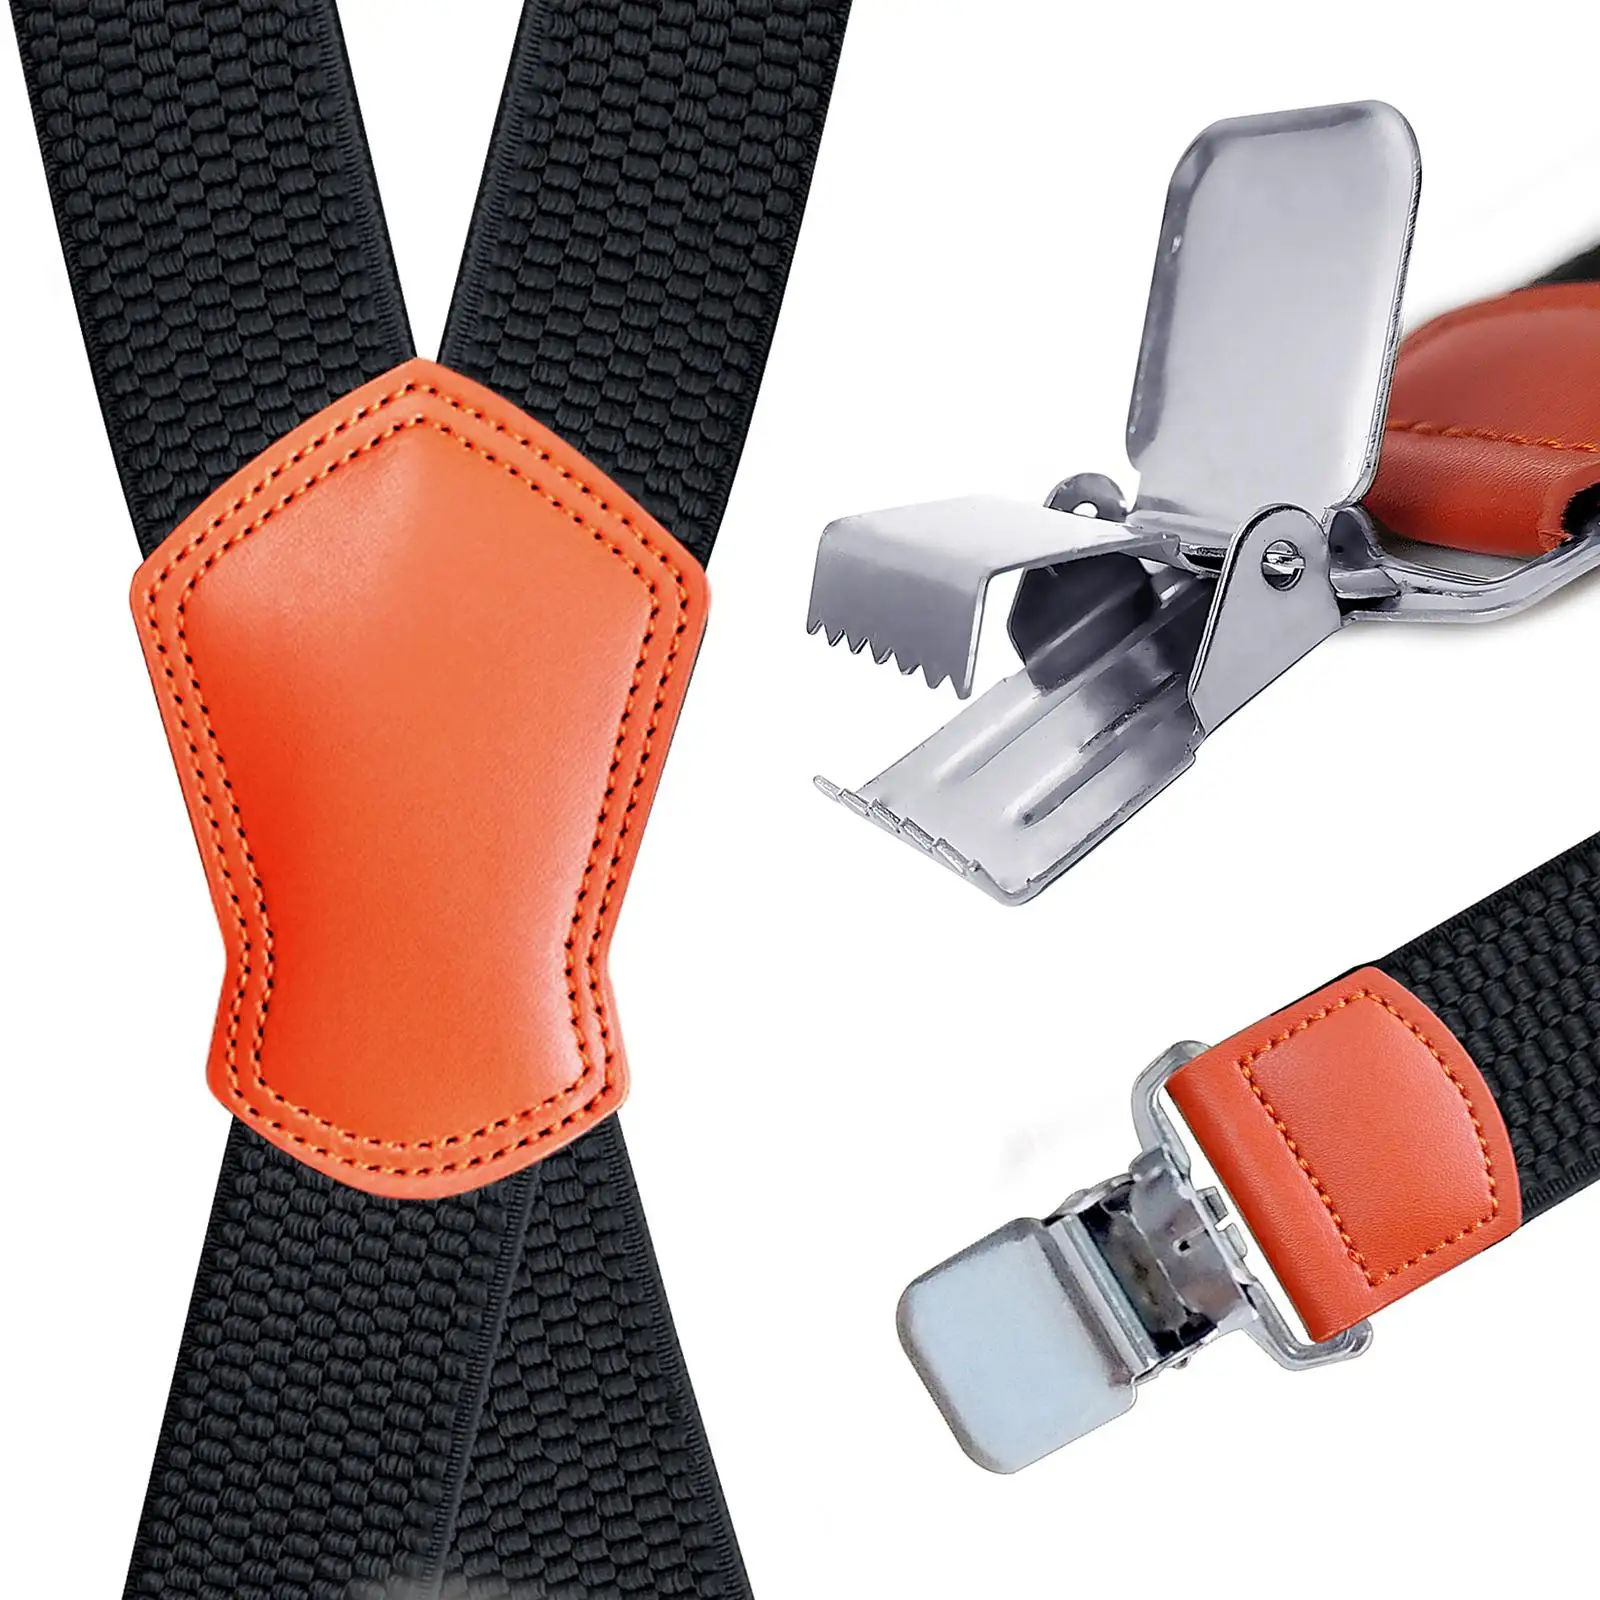 Suspenders for Men, X Shaped Design Adjustable Suspender with 4 Metal Clips Groomsmen Gift